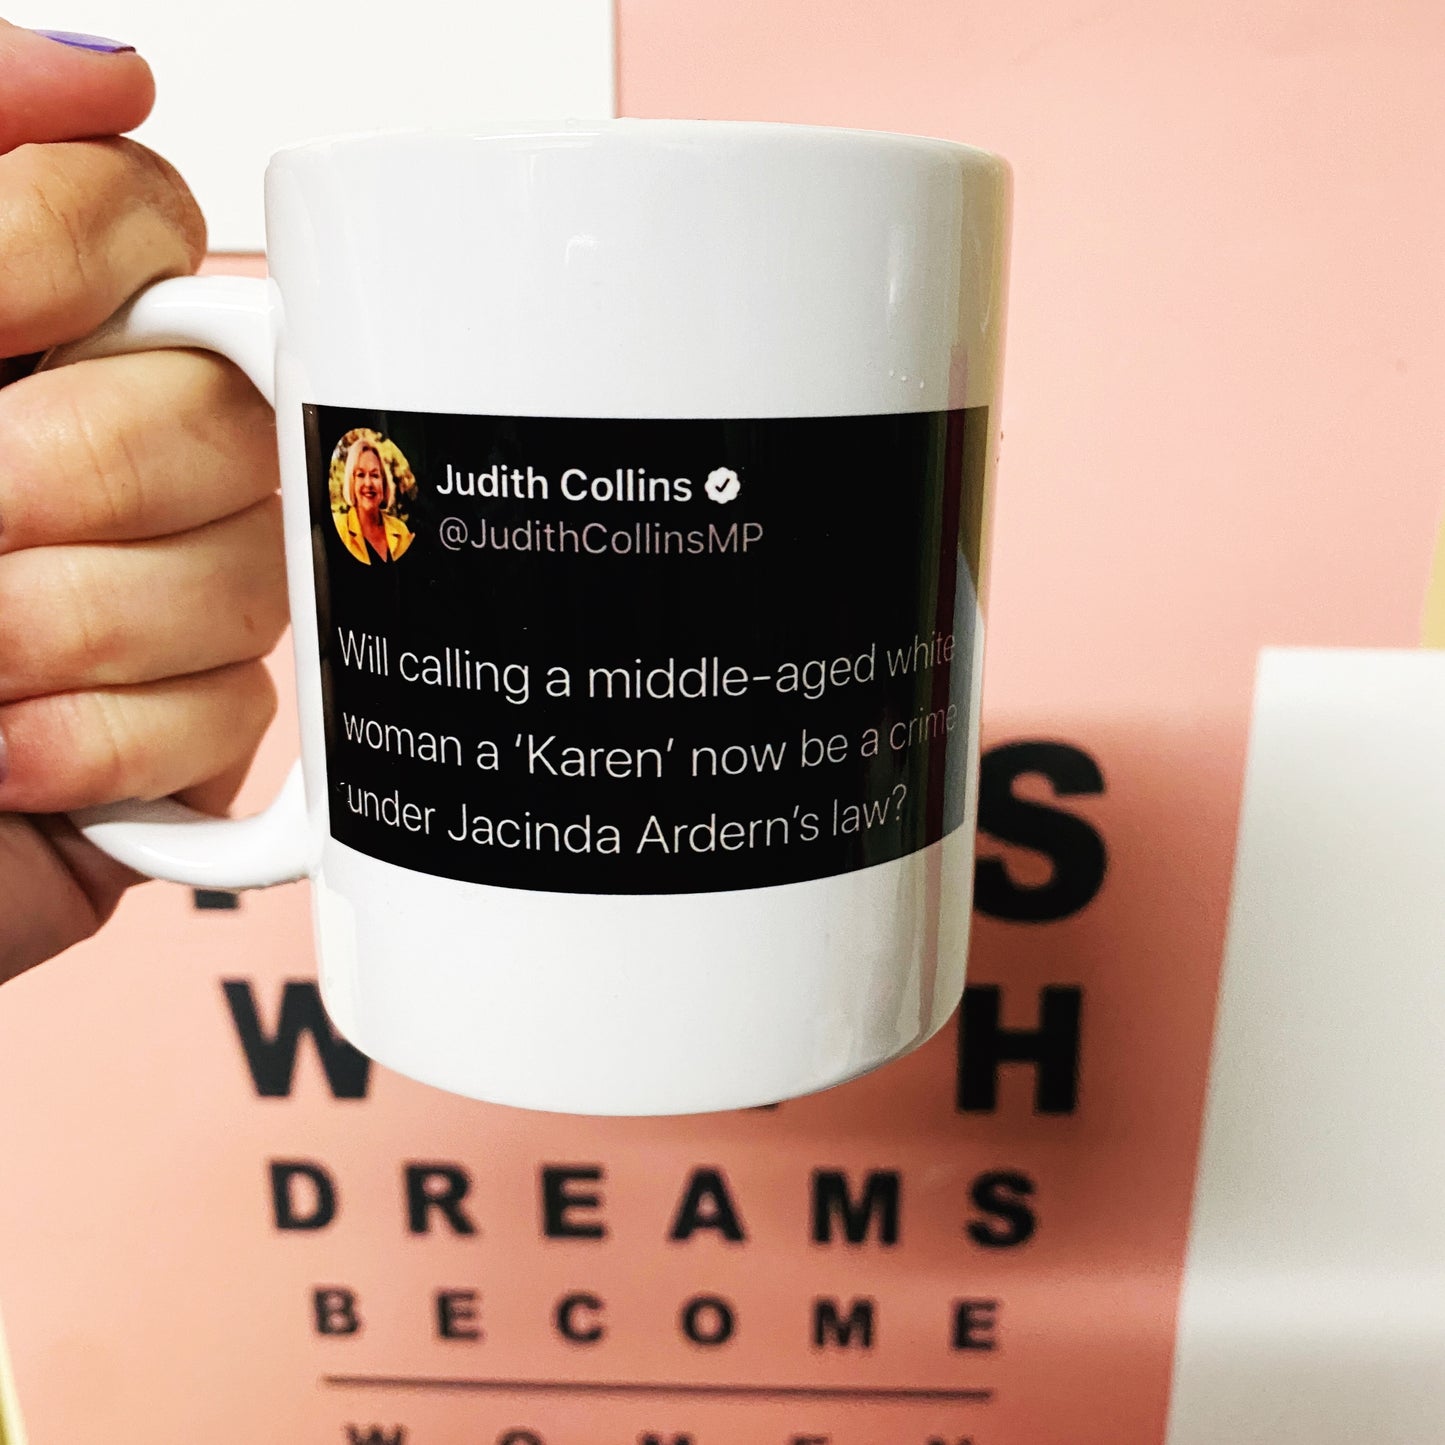 Judith Karen tweet mug